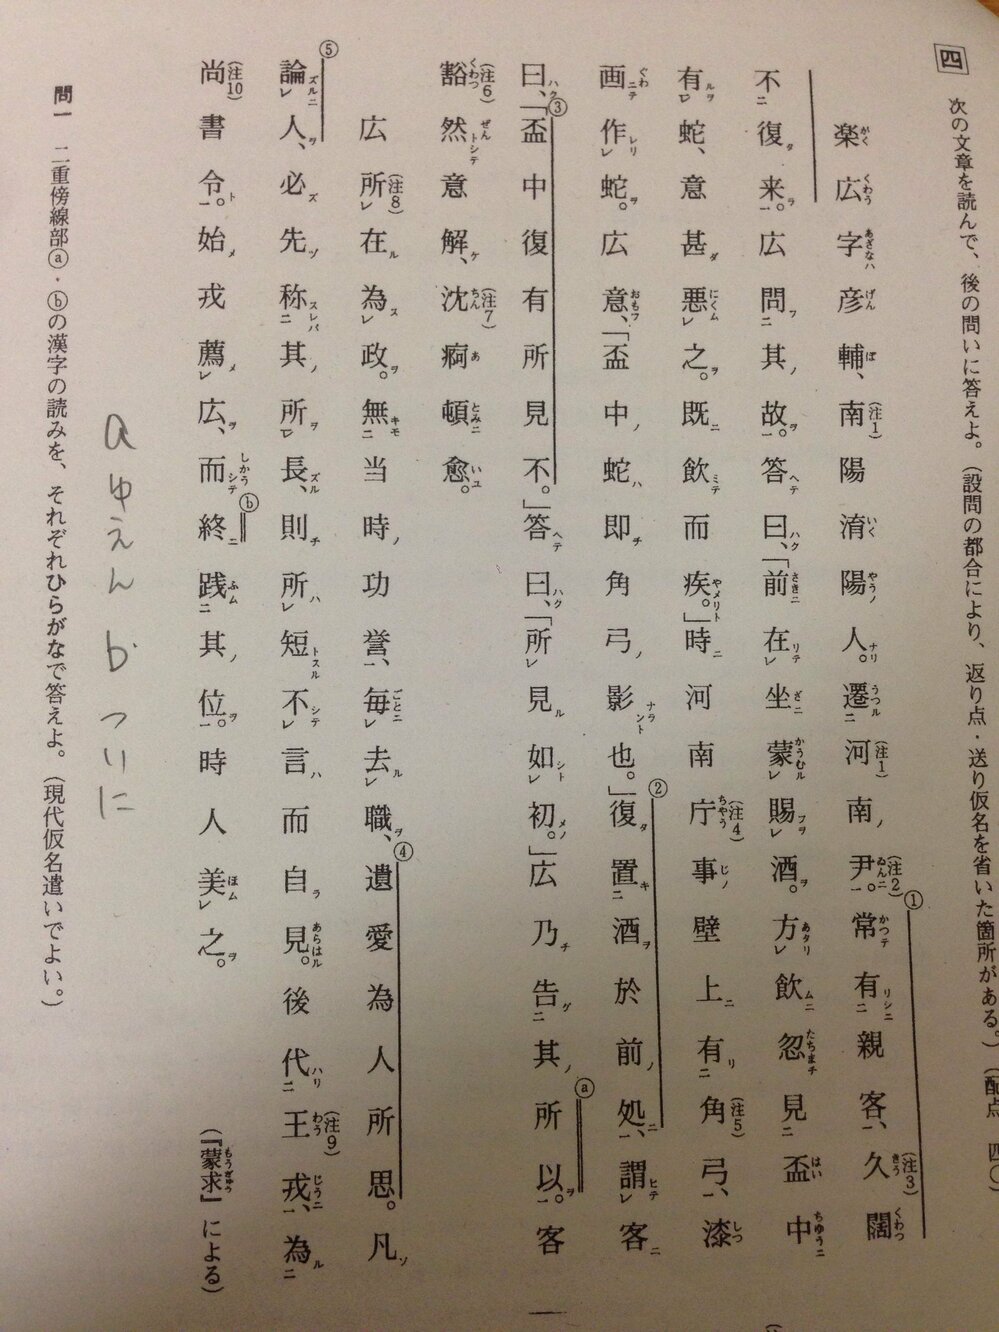 漢文 蒙求 の写真の部分の現代語訳をお願いしたいです よろしくお願いします Yahoo 知恵袋